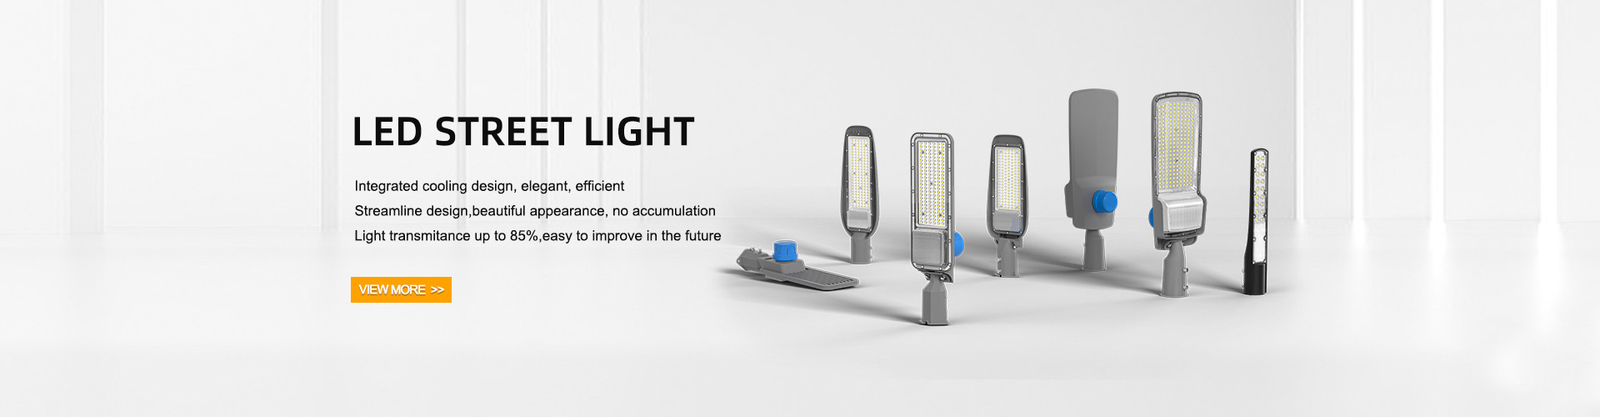 chất lượng Đèn đường LED chạy bằng năng lượng mặt trời nhà máy